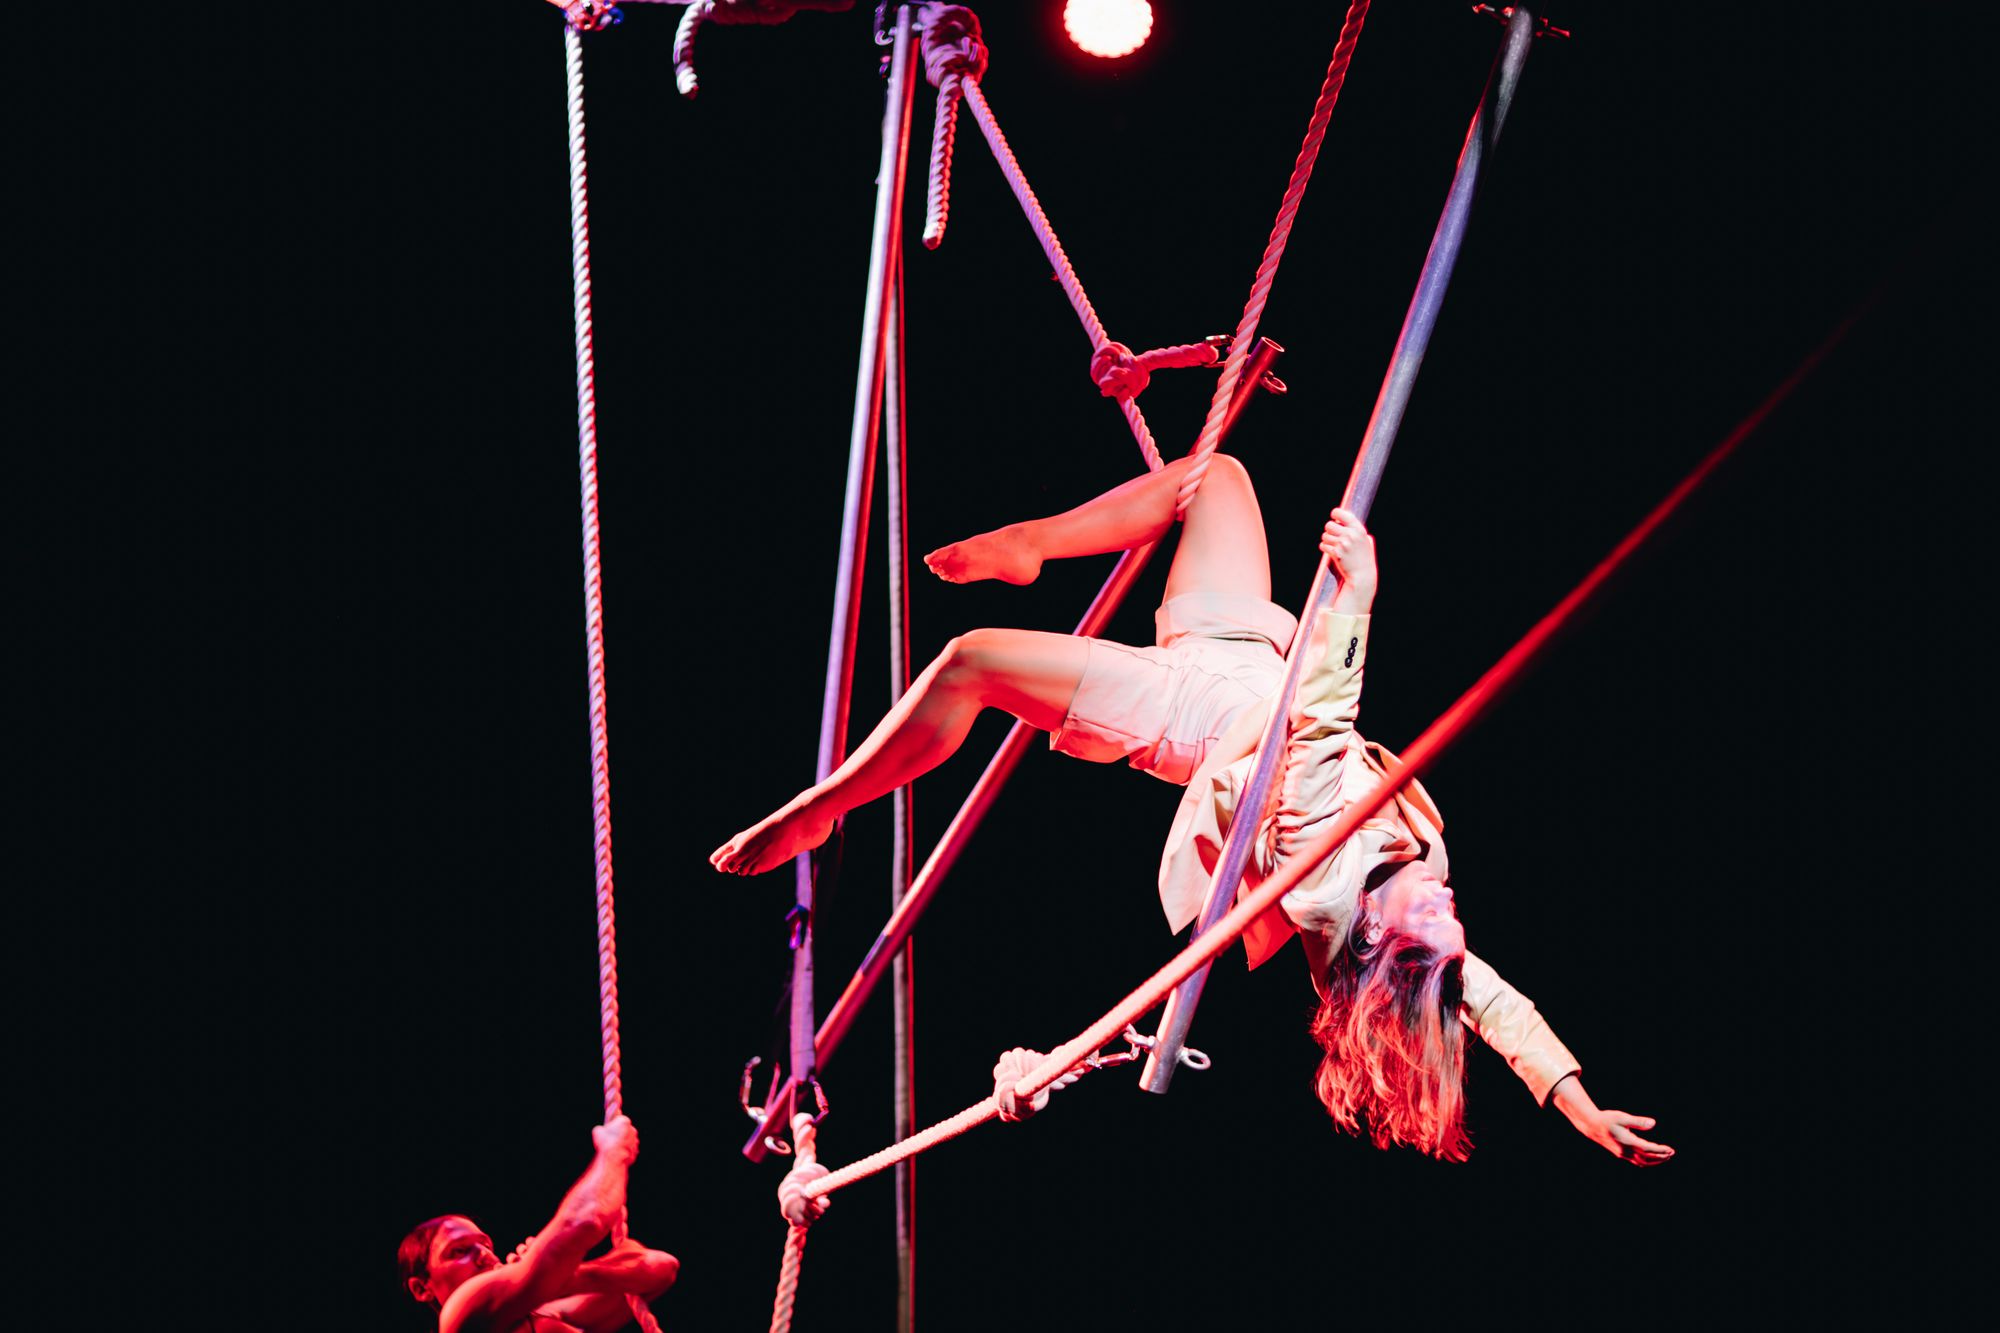 EPICIRQ 2023. A glance into the Baltic Contemporary Circus scene